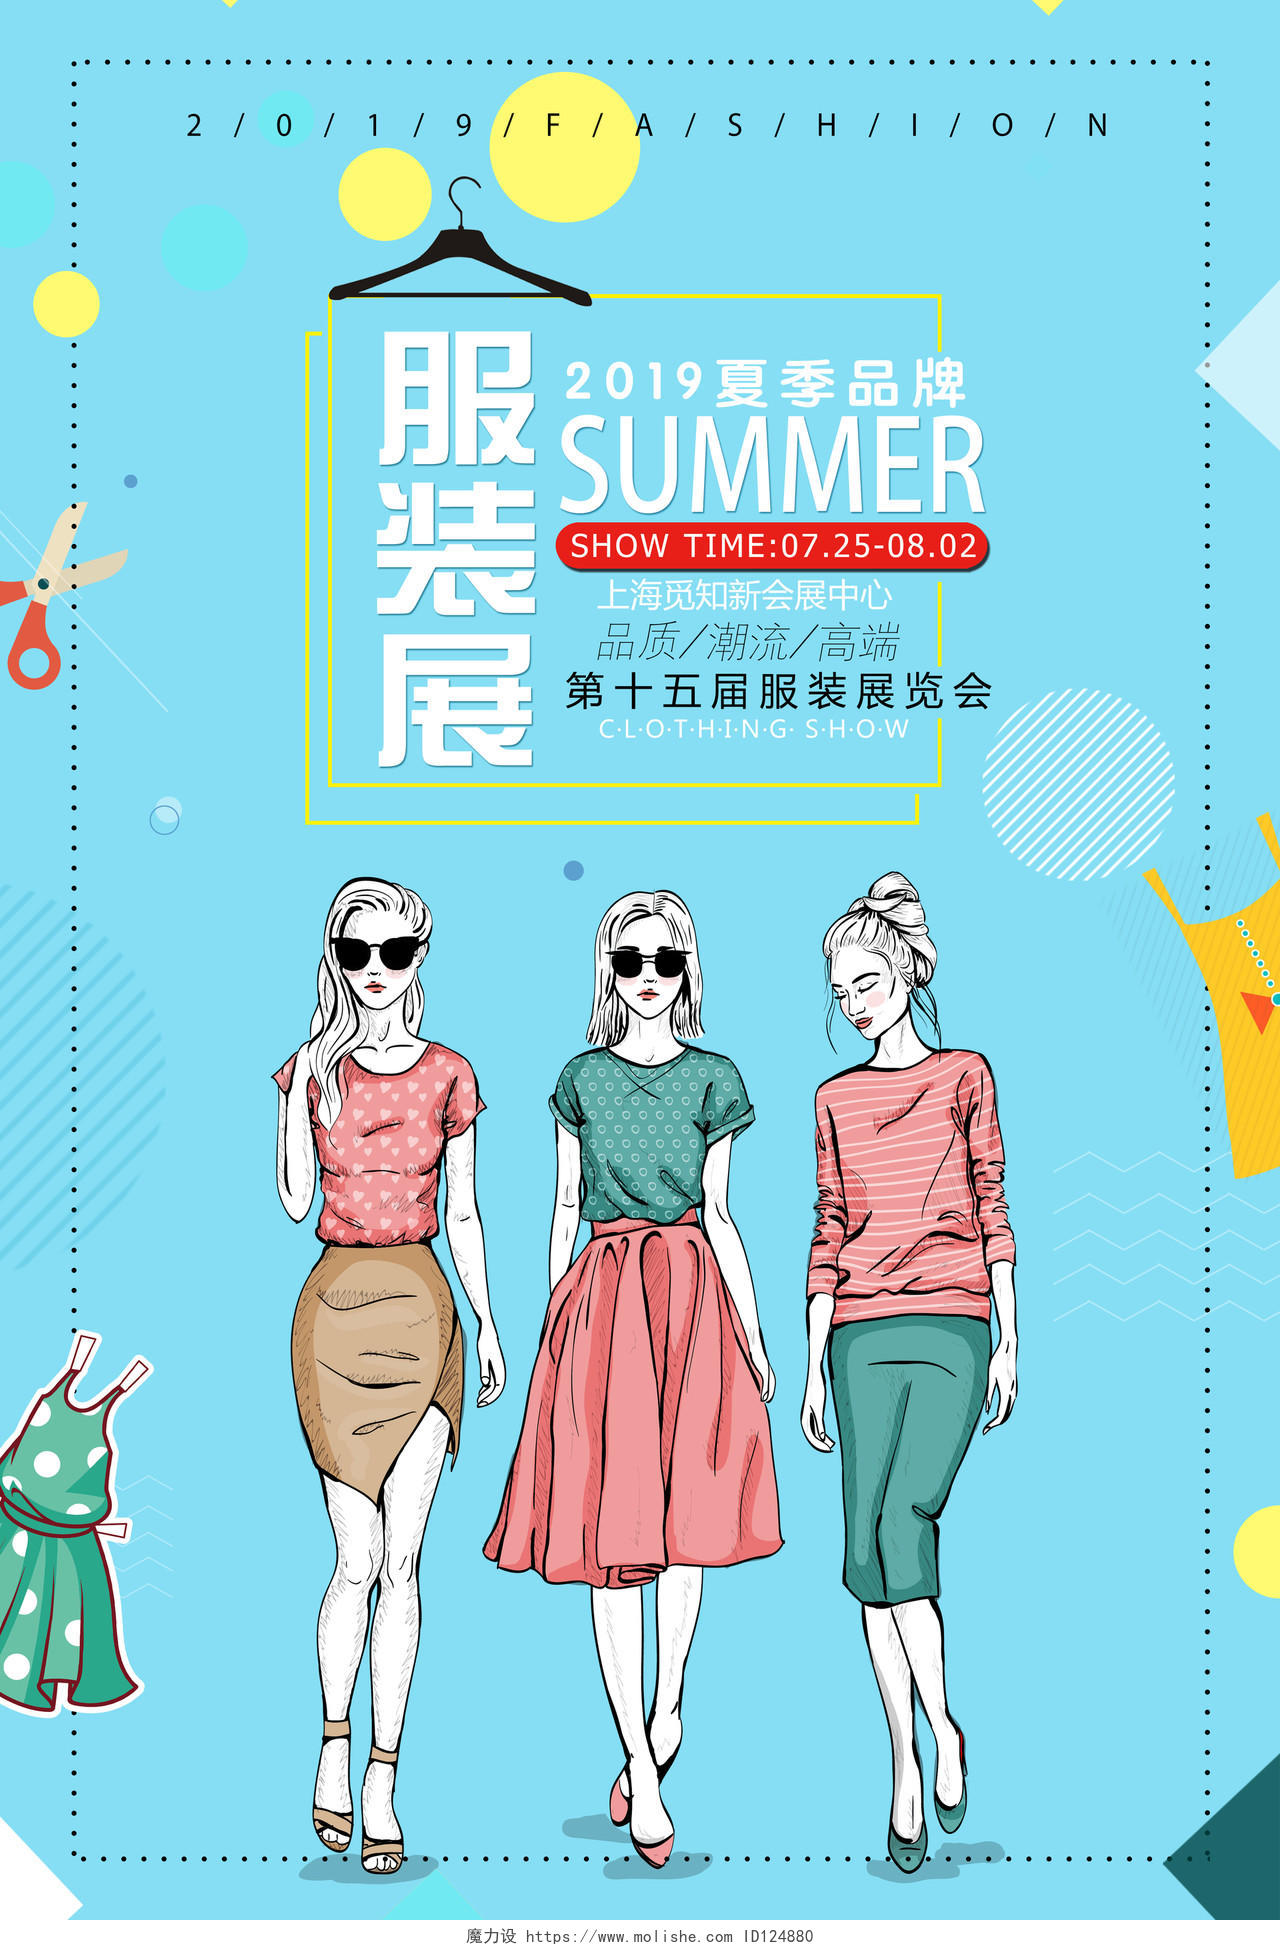 2019夏季服装展览会服装服饰衣服宣传海报